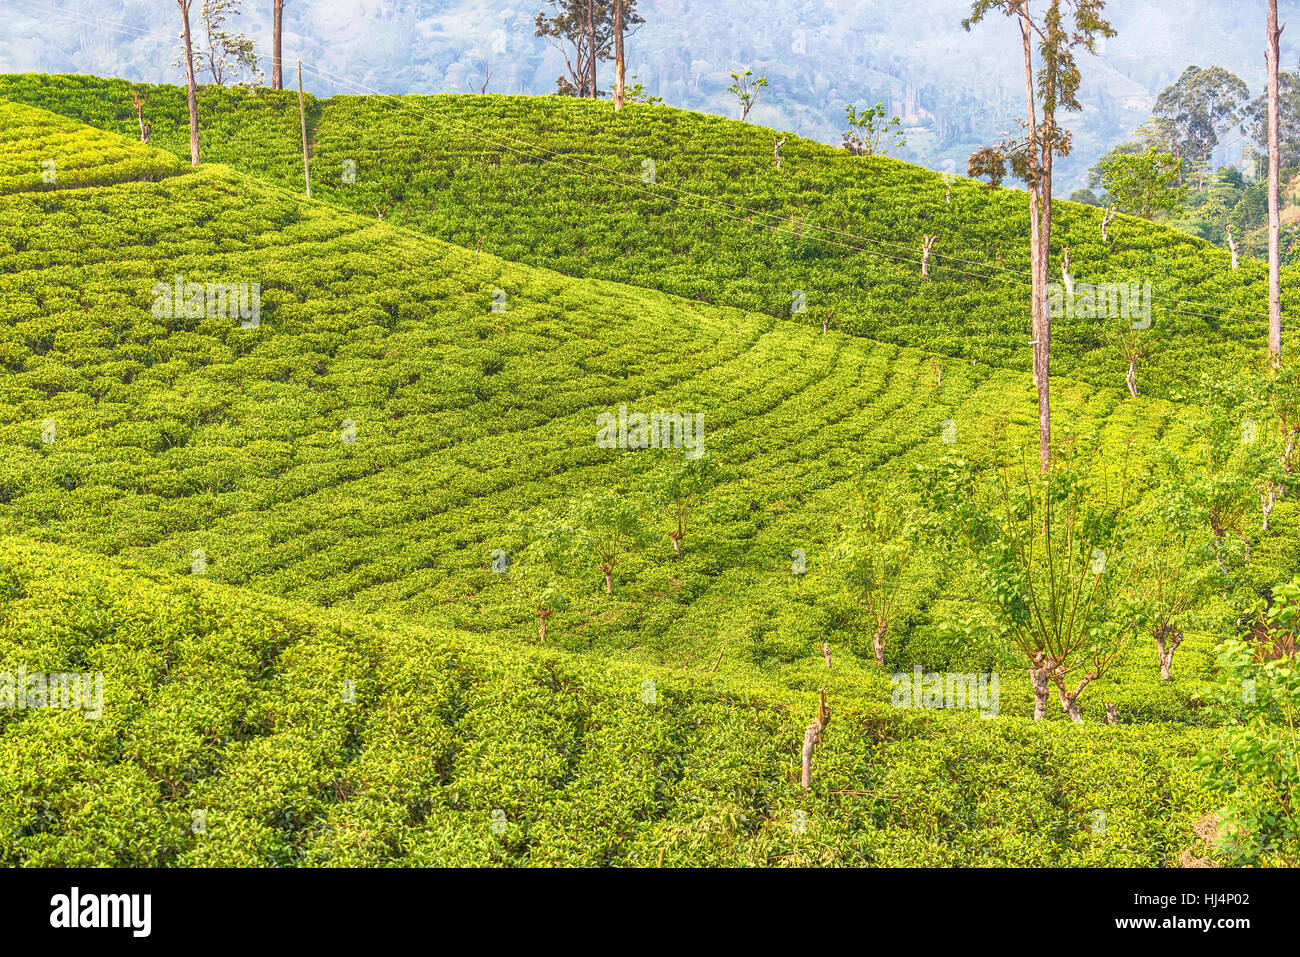 Sri Lanka: highland Ceylon tea fields in Ella Stock Photo